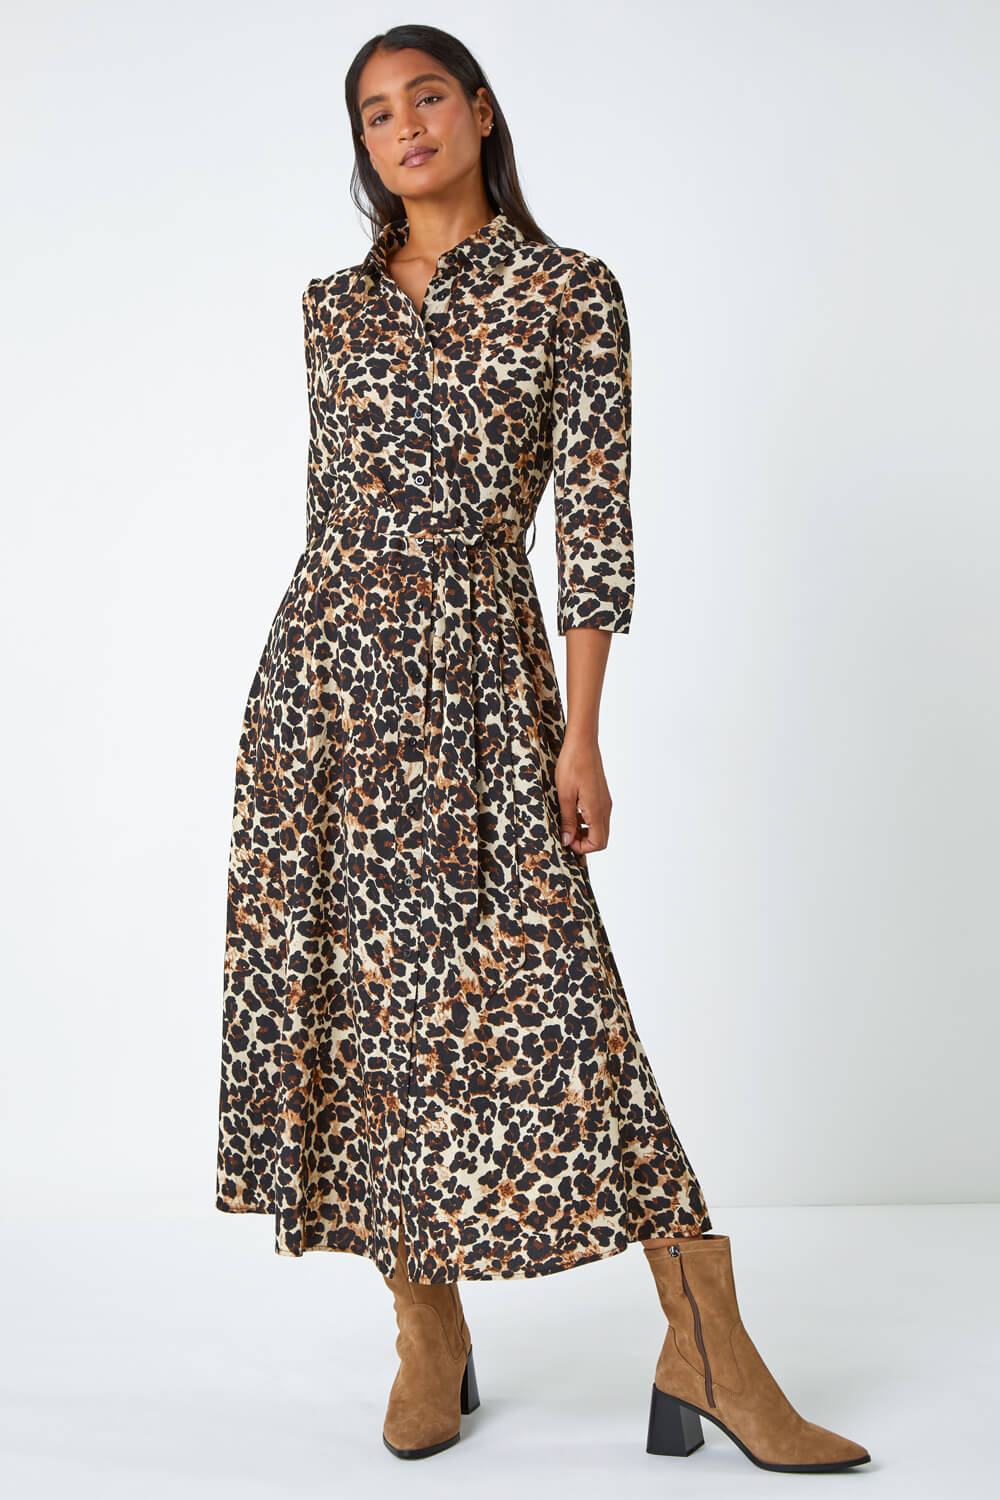 Beige Leopard Print Belted Shirt Dress, Image 2 of 5